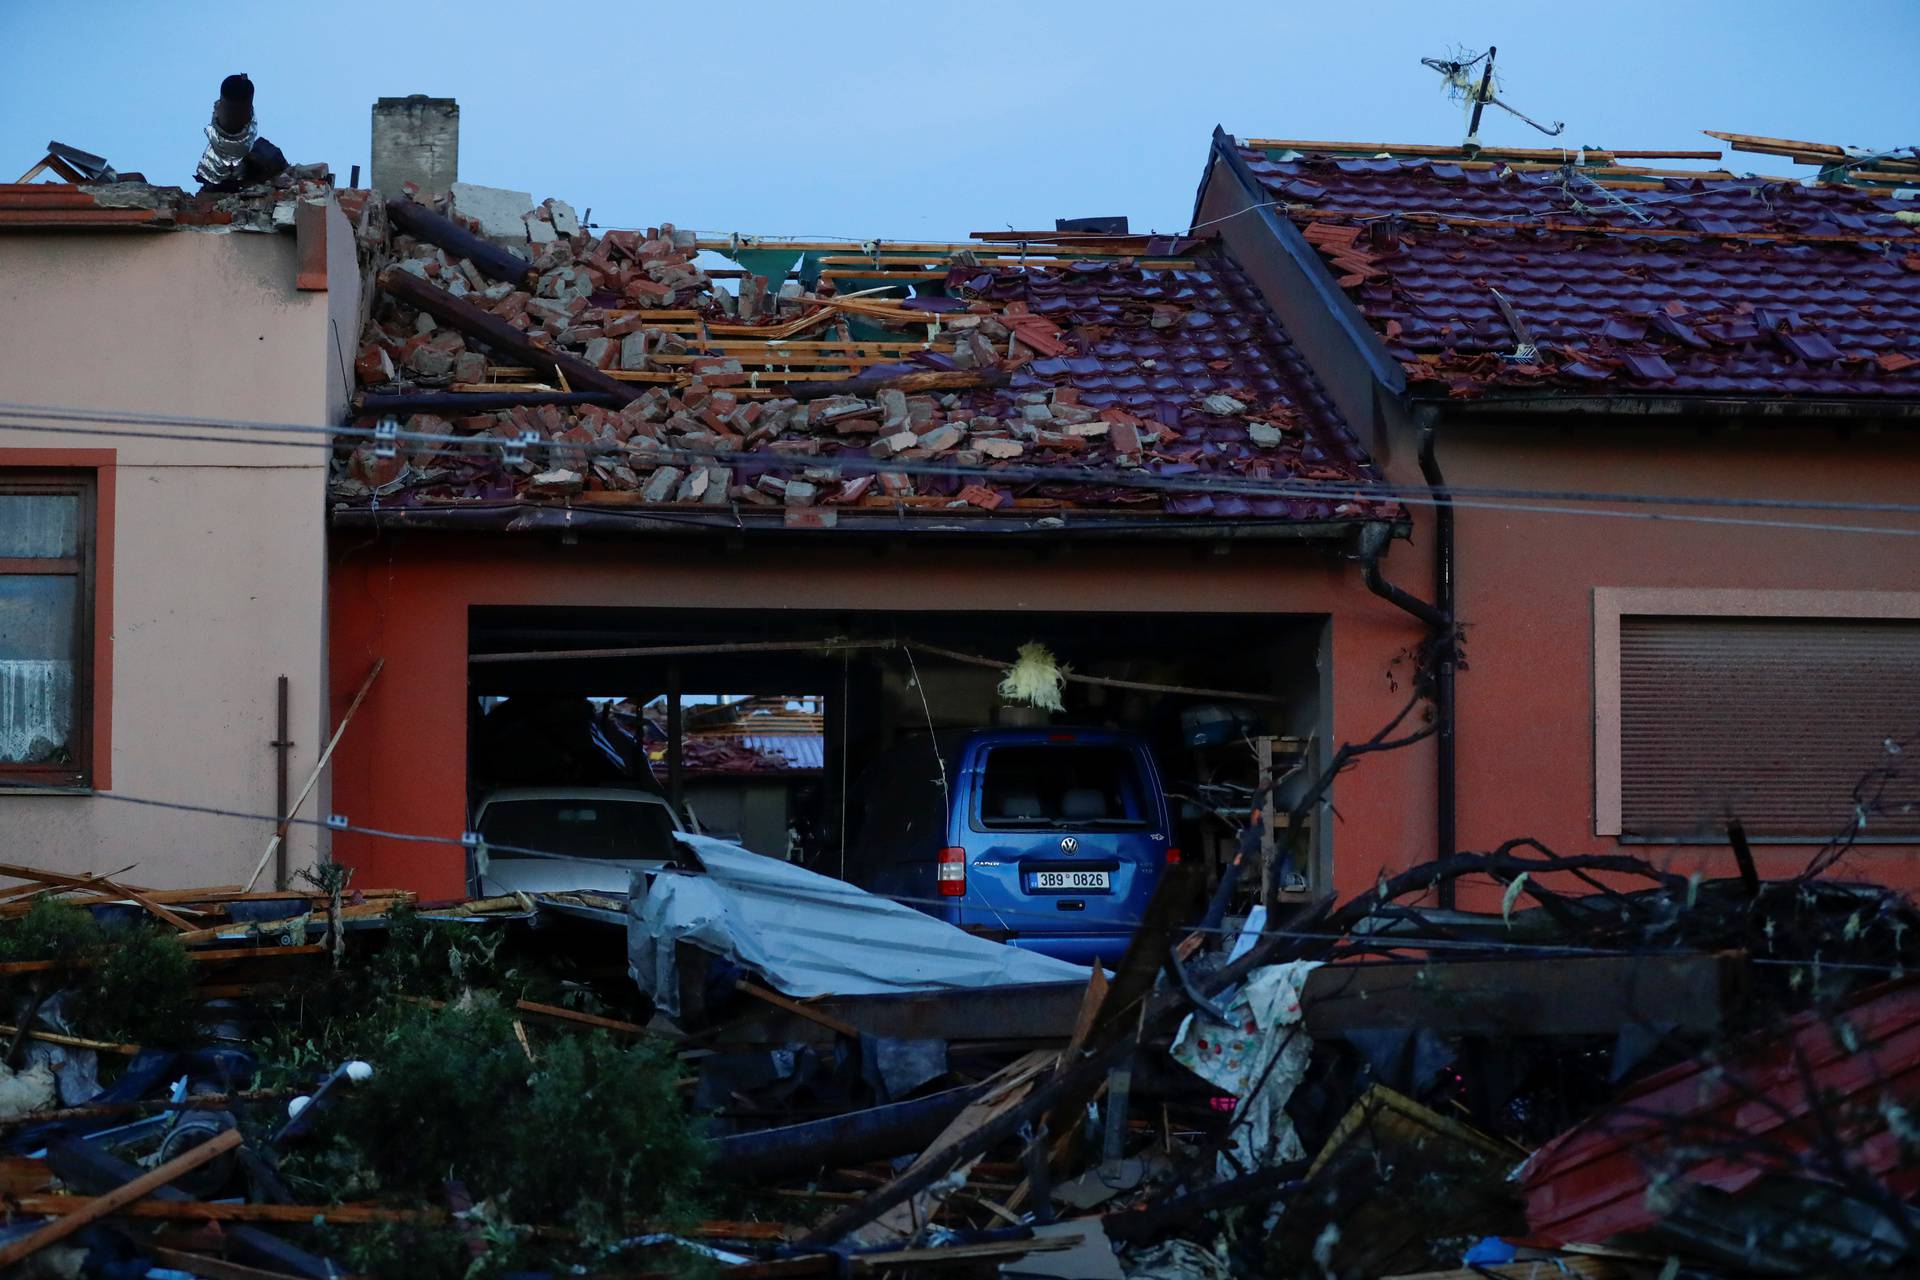 Aftermath of rare tornado in Moravska Nova Ves